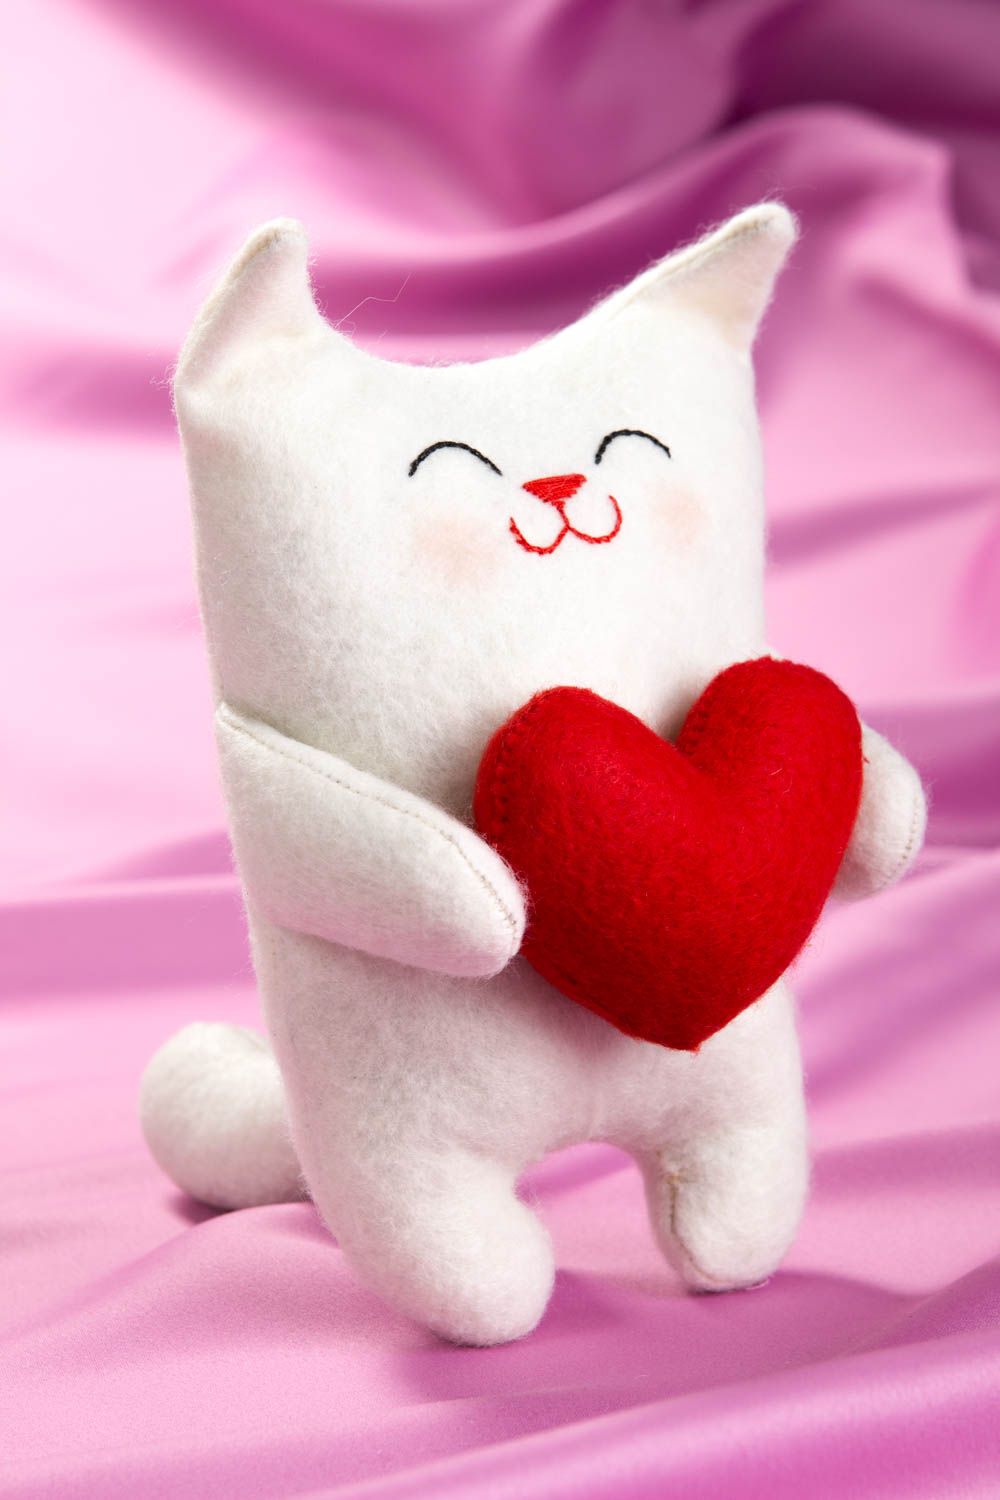 Игрушка ручной работы игрушка кот интересный подарок игрушка белая с сердечком фото 1